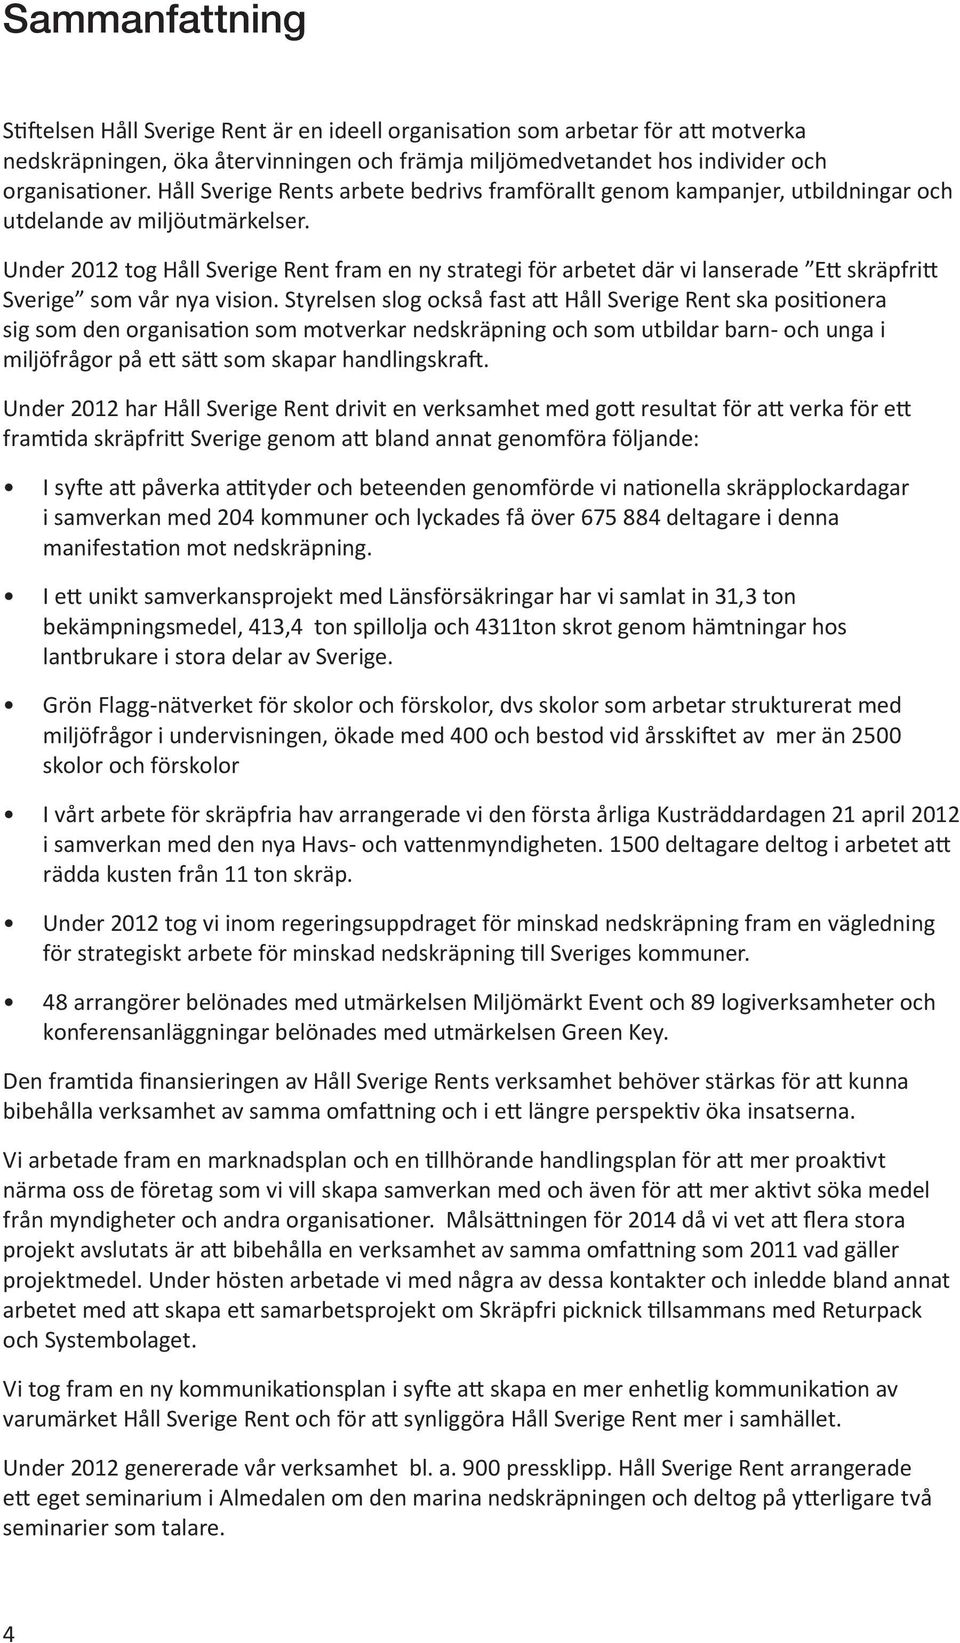 Under 2012 tog Håll Sverige Rent fram en ny strategi för arbetet där vi lanserade Ett skräpfritt Sverige som vår nya vision.